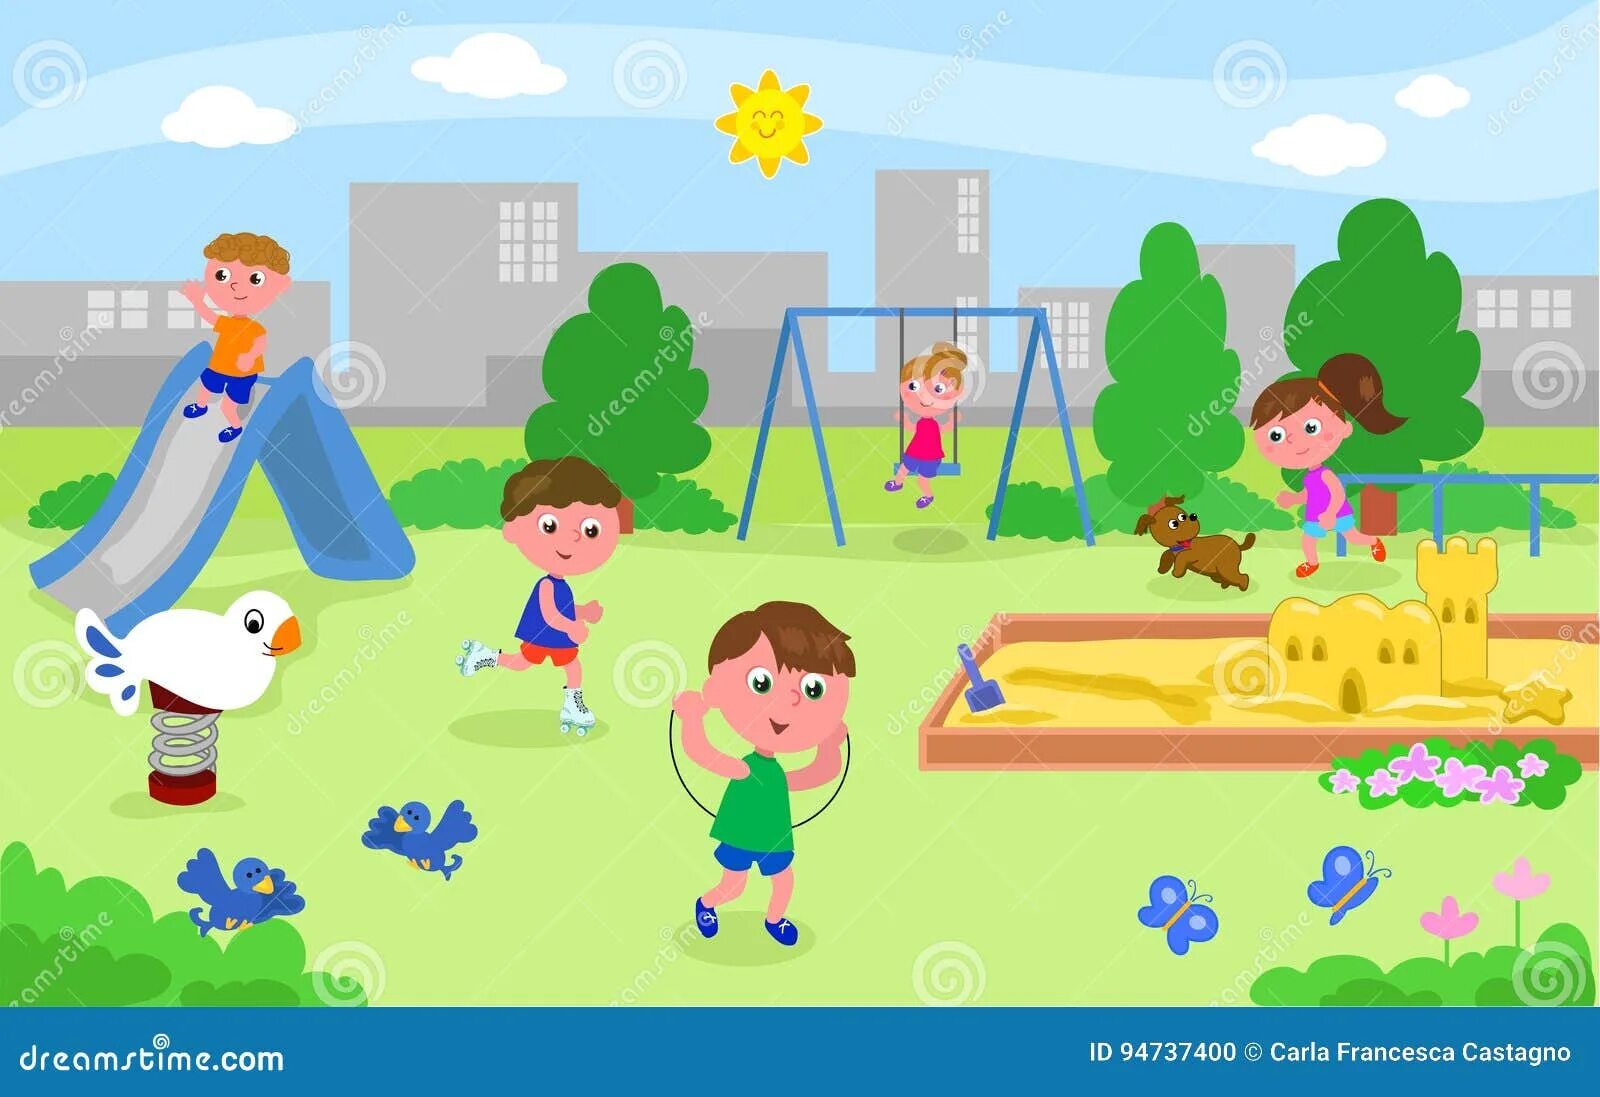 Рисунок играющие дети на детской площадке. Парк для игр детские картинки. Рисунок школы и детей играющих на площадке. Дети играющие в парке рисунок..